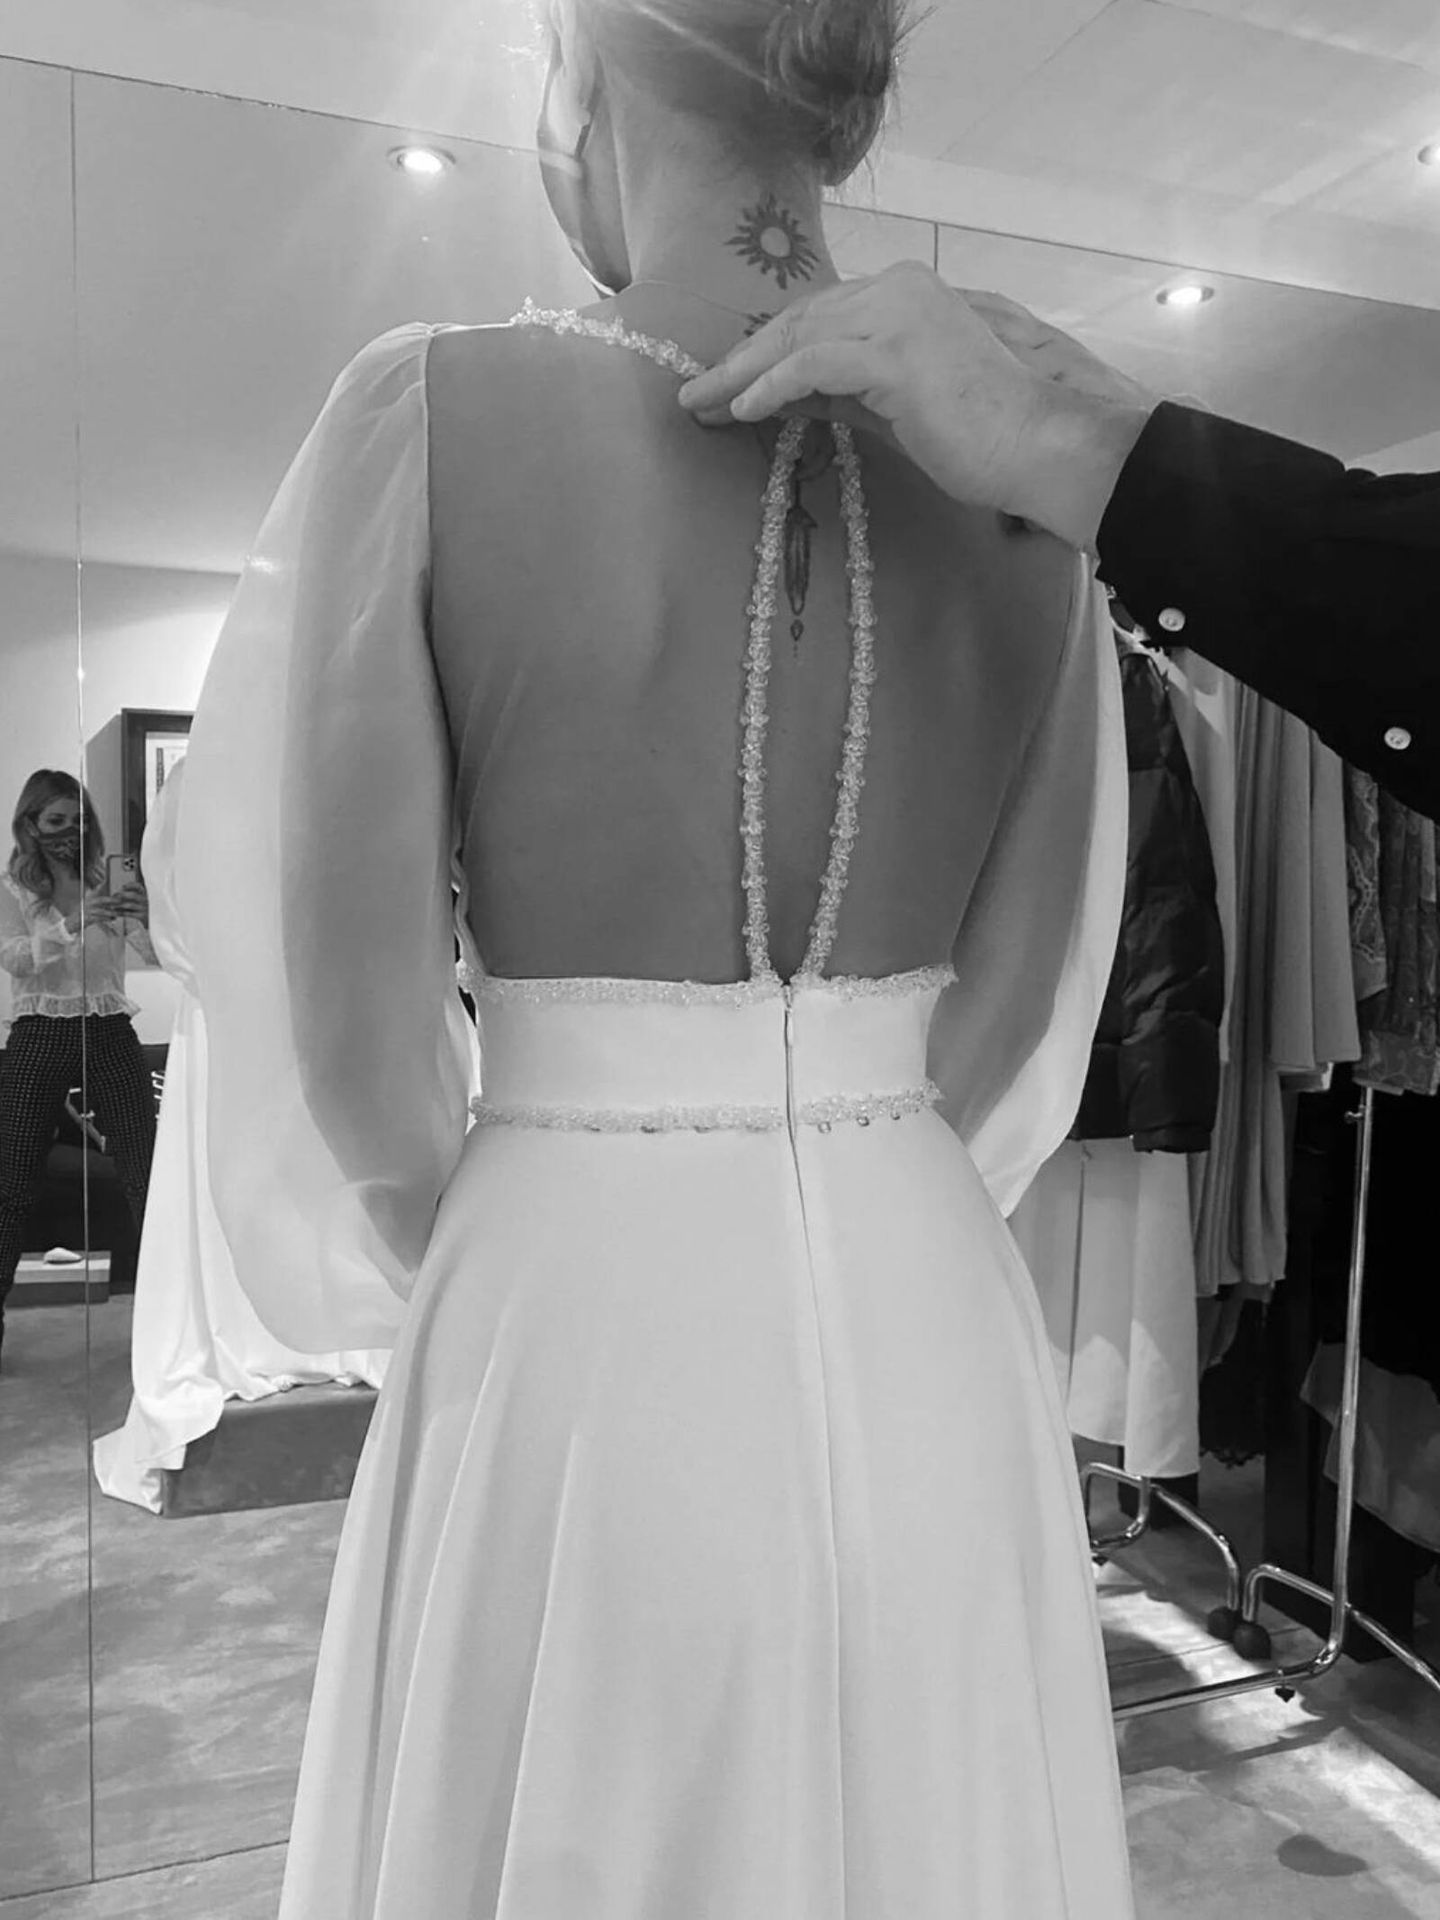 Nuevas fotografías del vestido de novia de Chenoa. (Instagram/@chenoa)